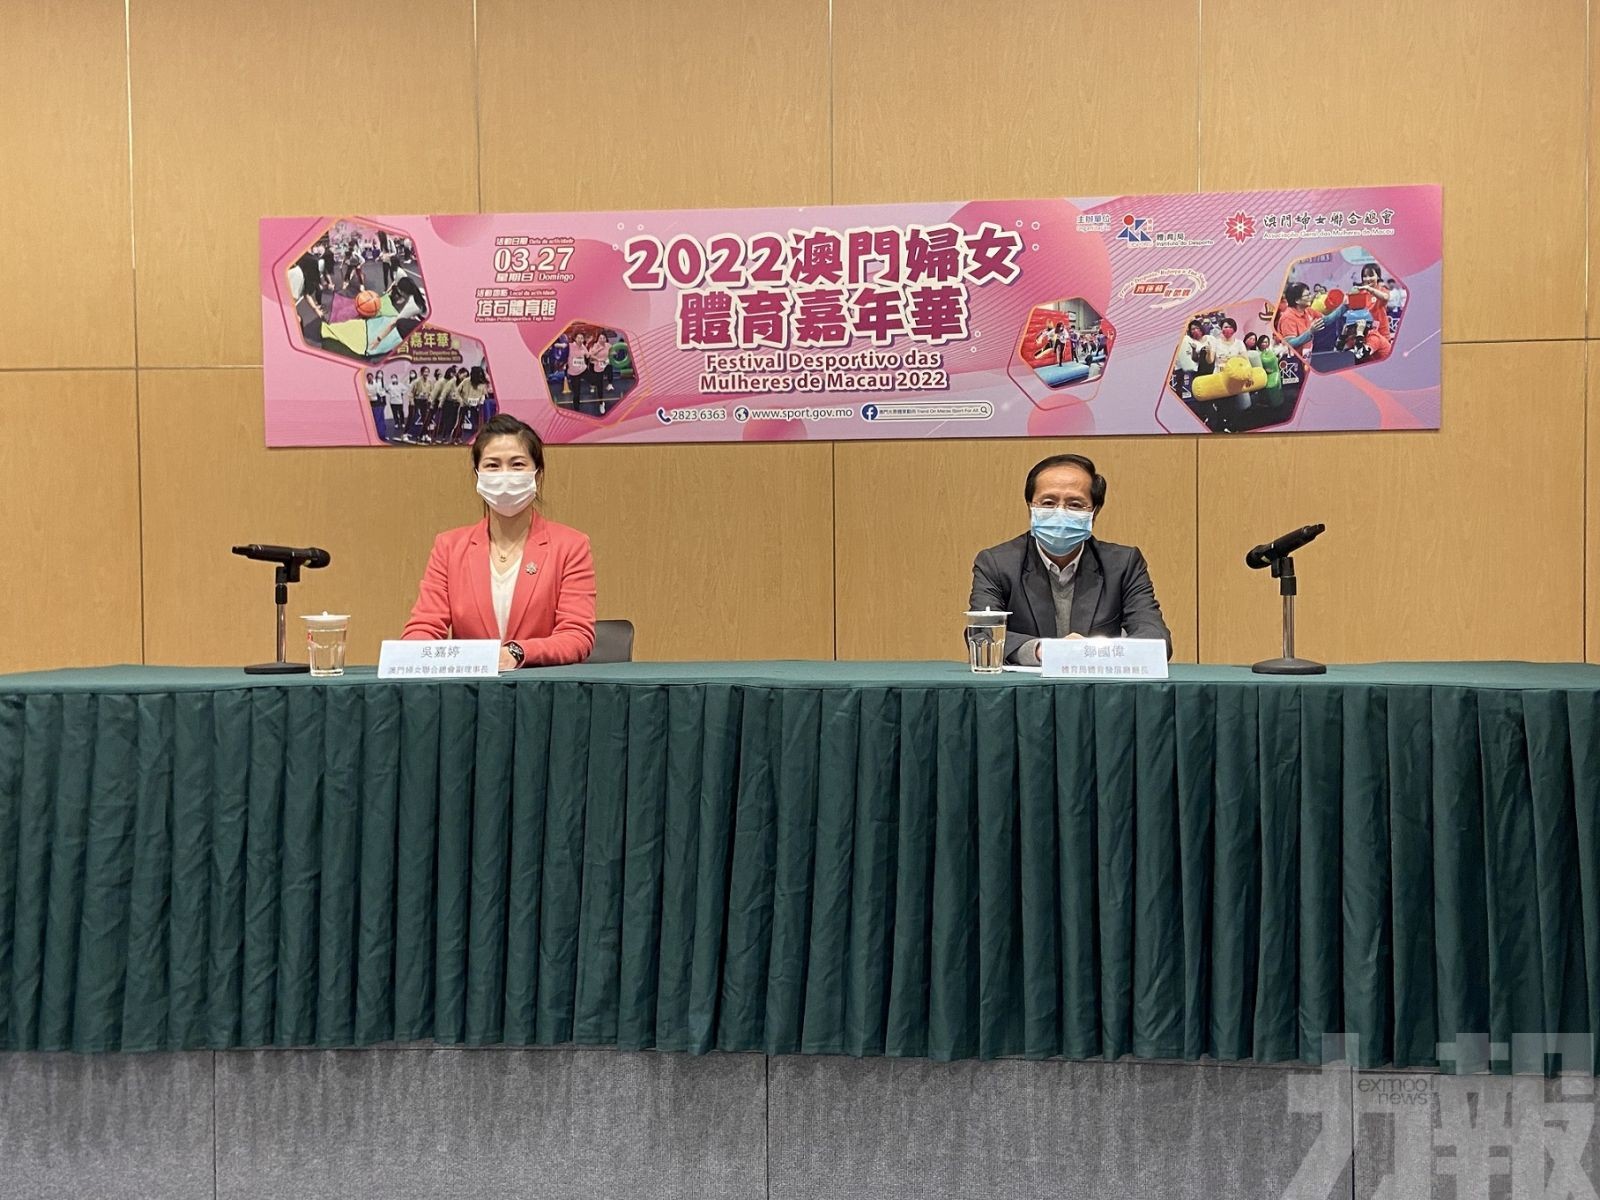 婦女體育嘉年華活動本月27日舉行